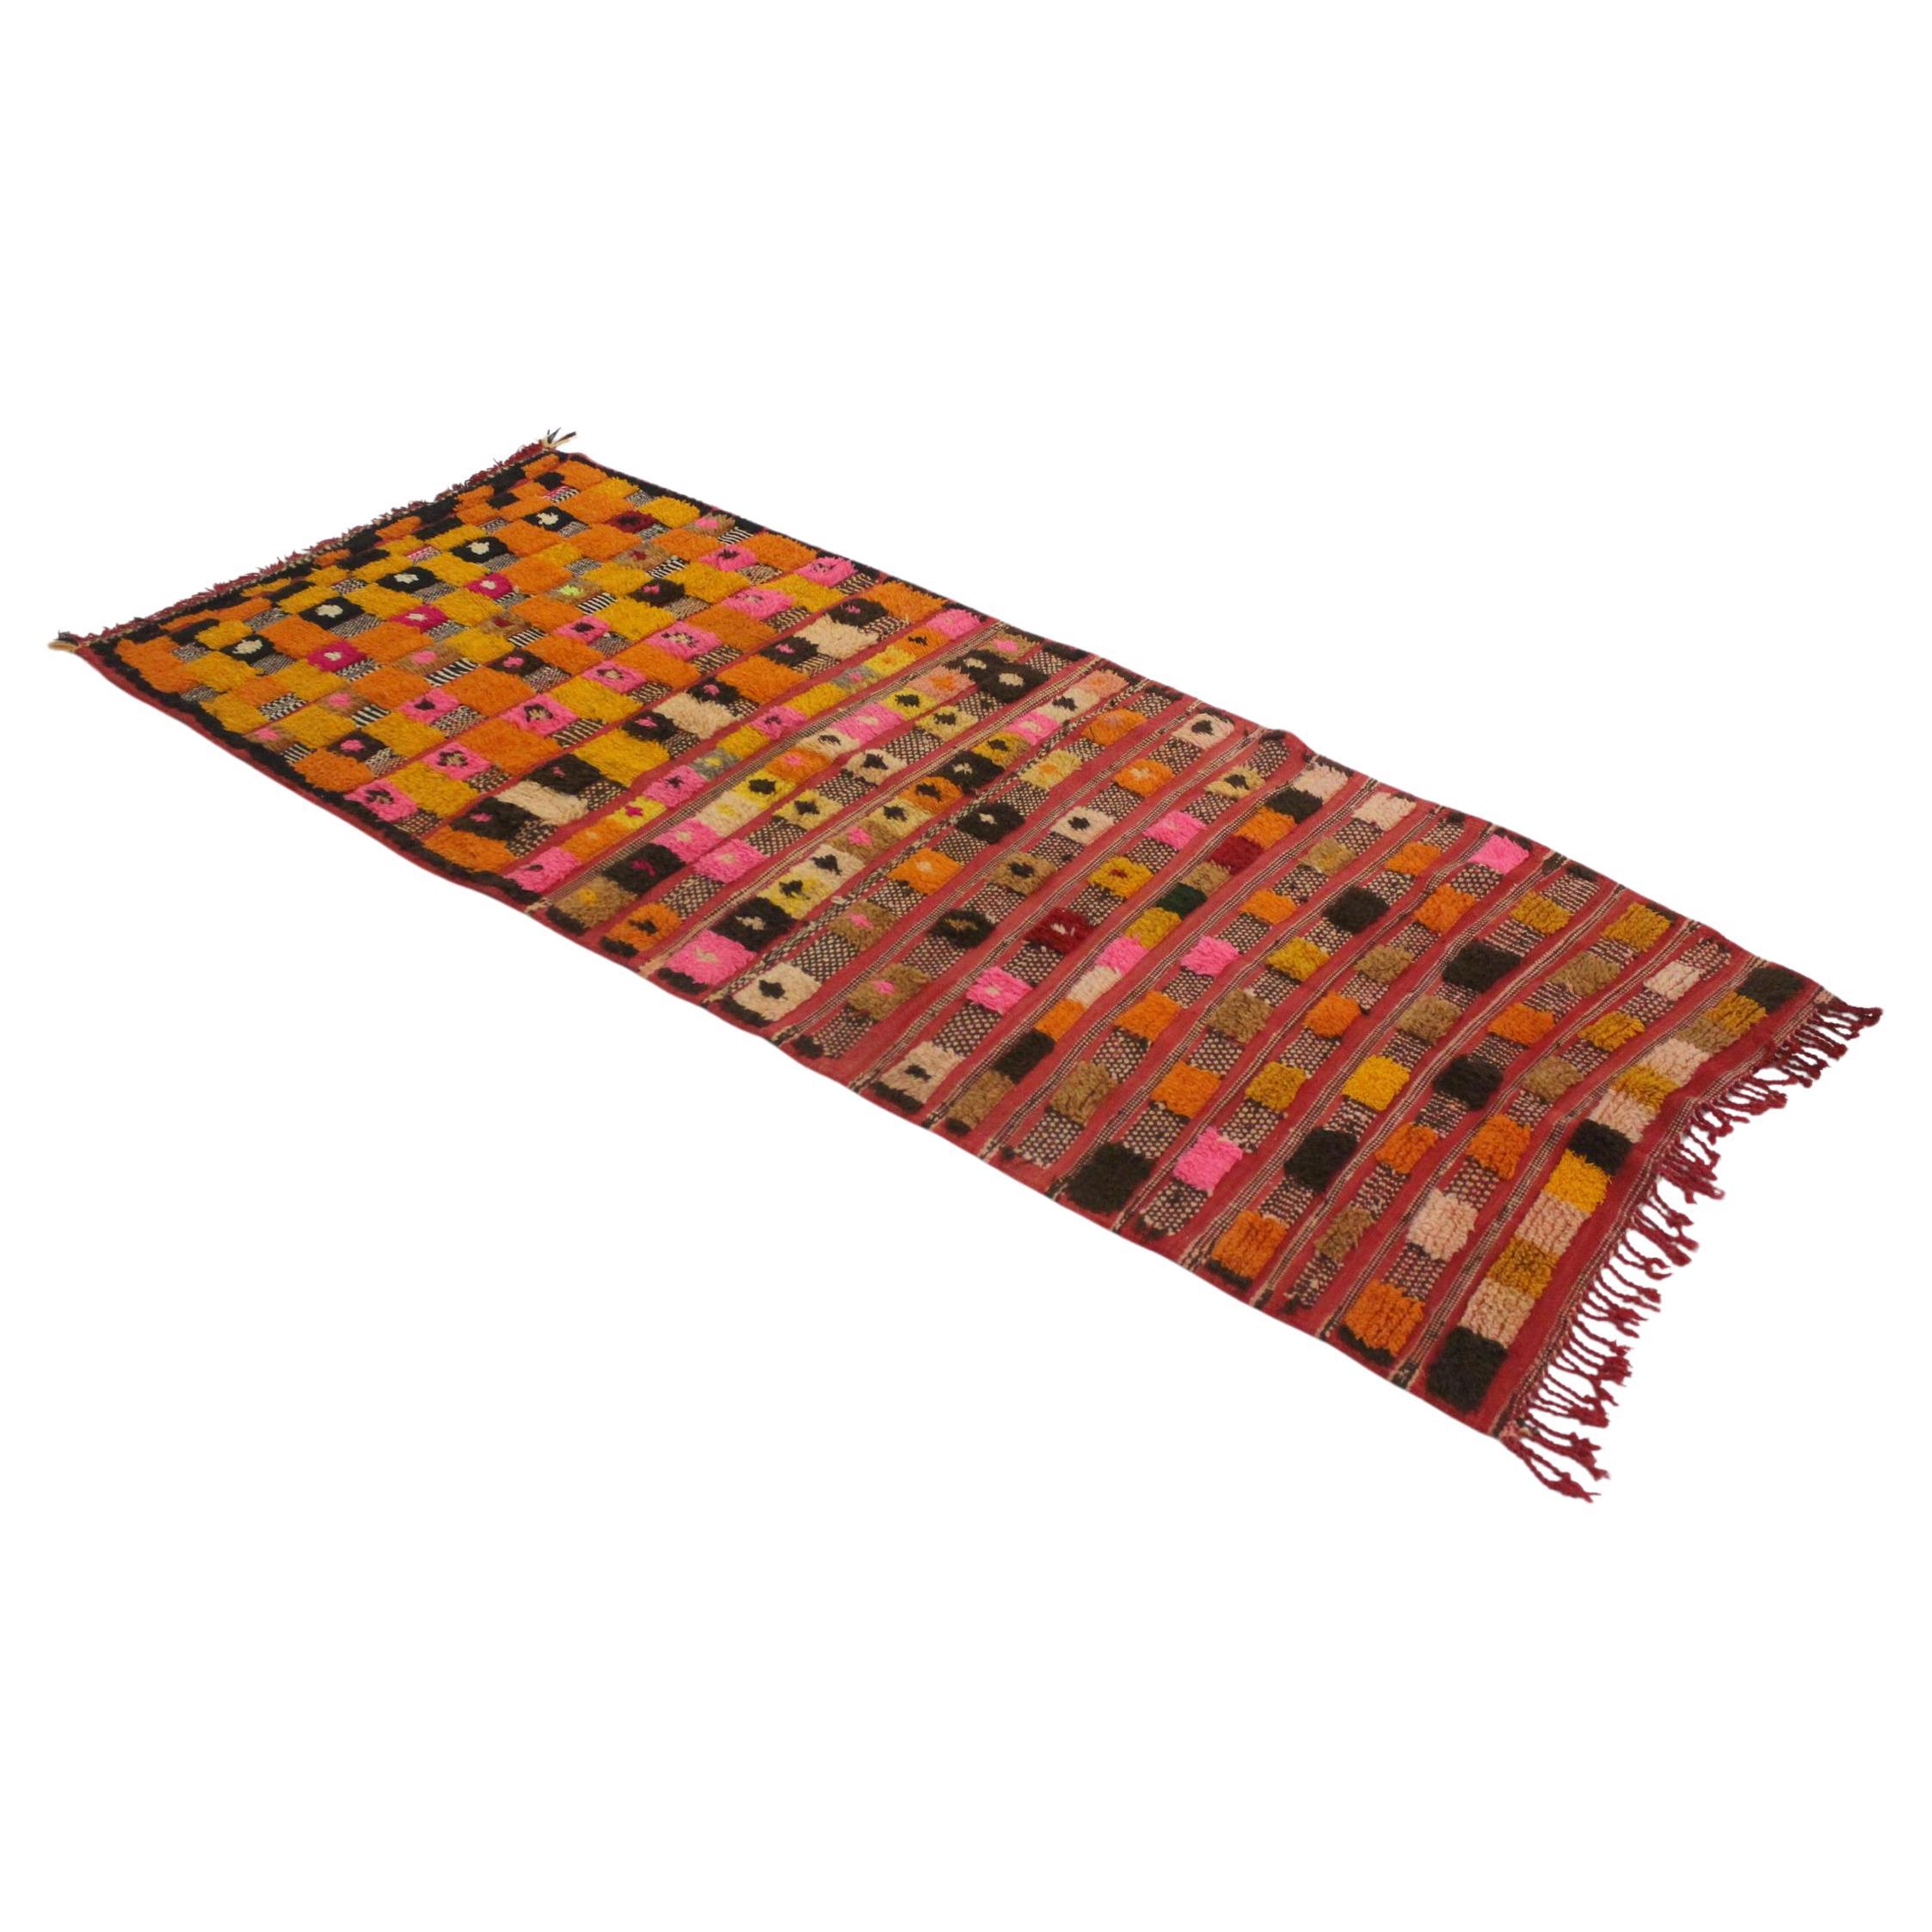 Vintage marokkanischen Azilal Teppich - Rot, orange, gelb - 3.3x7.7feet / 102x235cm im Angebot